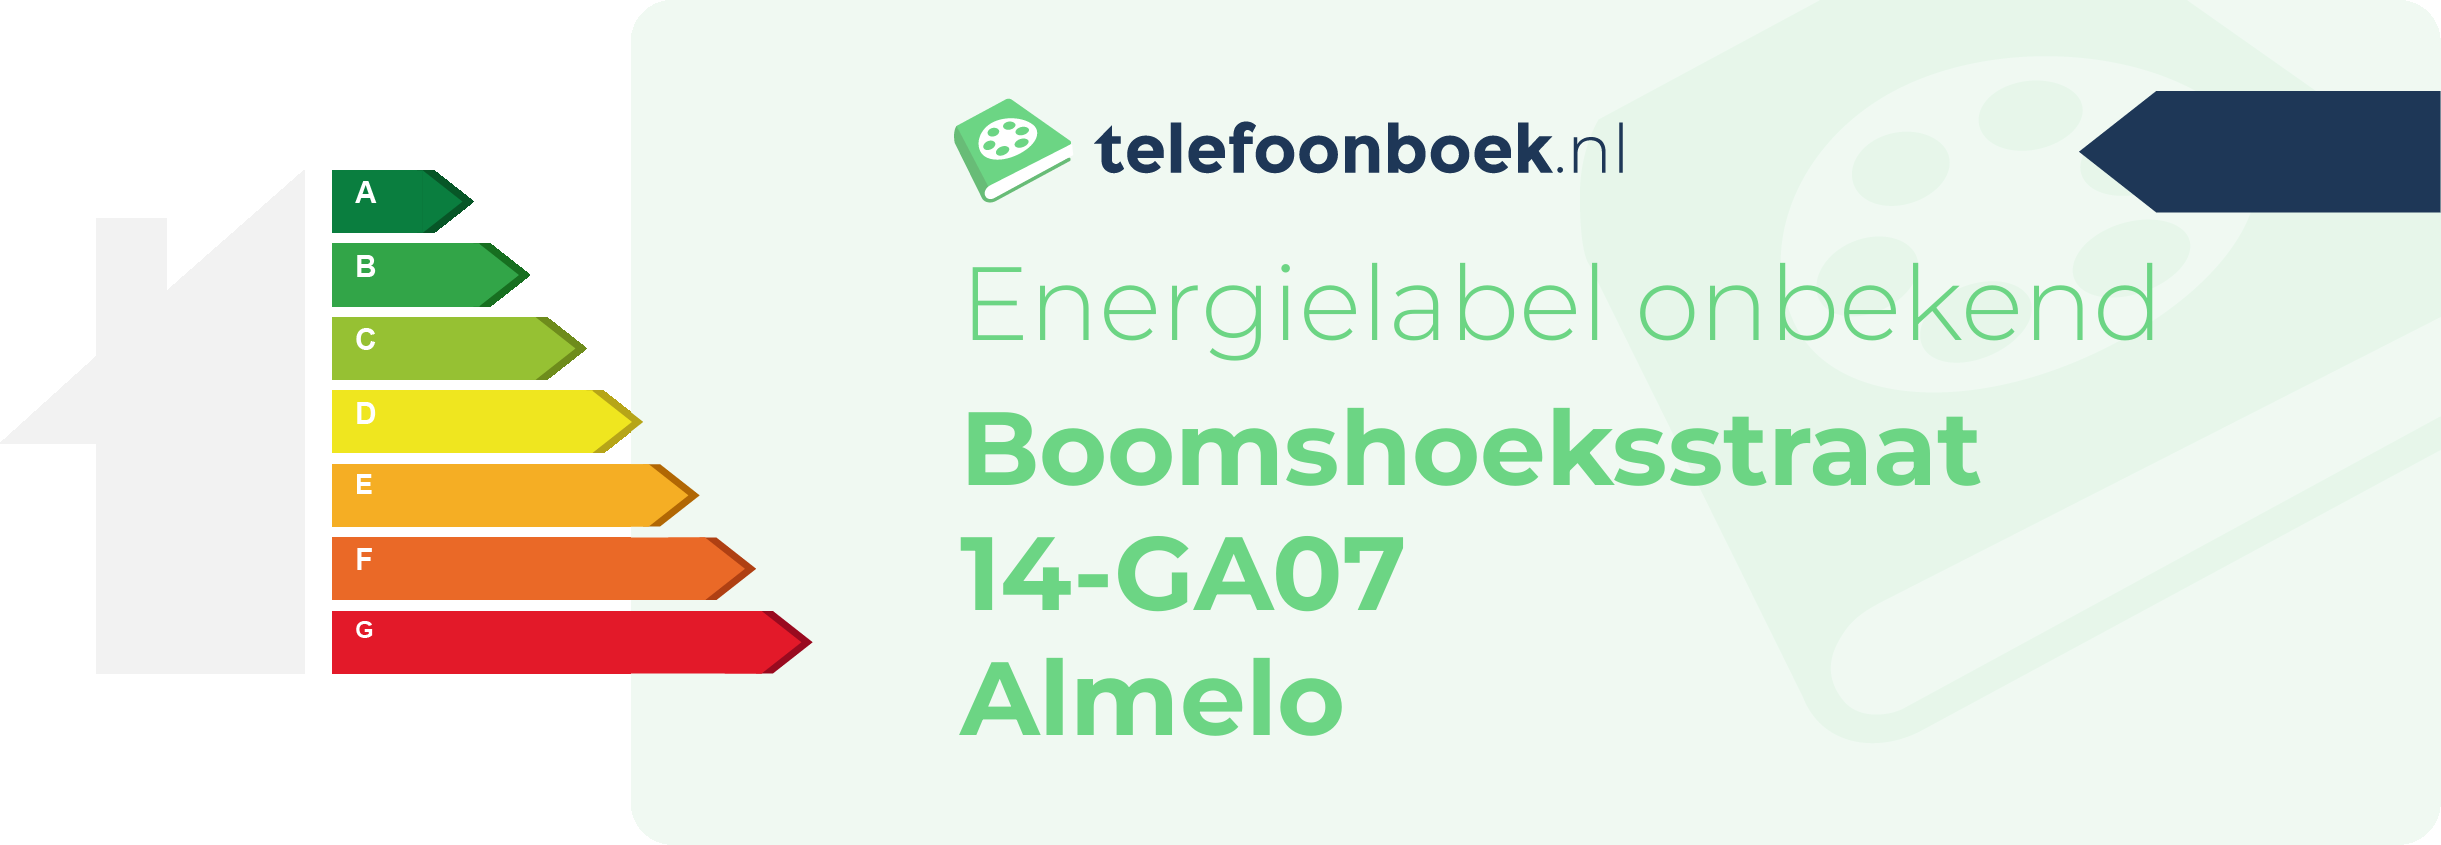 Energielabel Boomshoeksstraat 14-GA07 Almelo